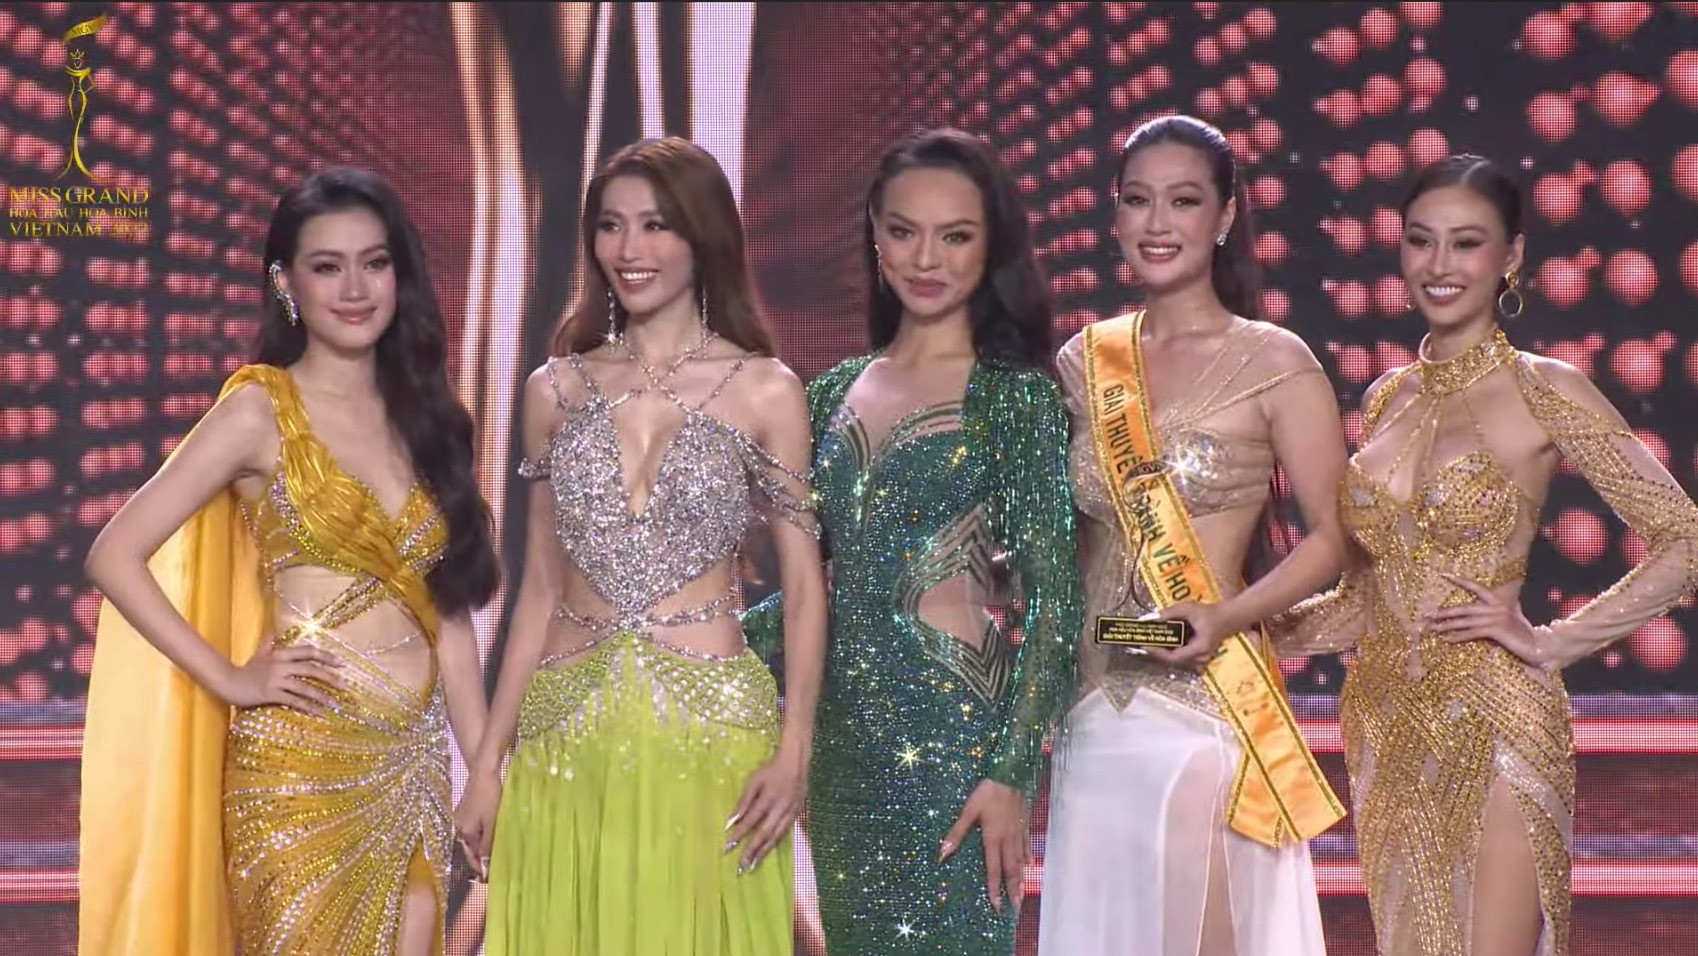 Đoàn Thiên Ân đăng quang Miss Grand Vietnam - Hoa hậu Hòa bình Việt Nam 2022 - 4